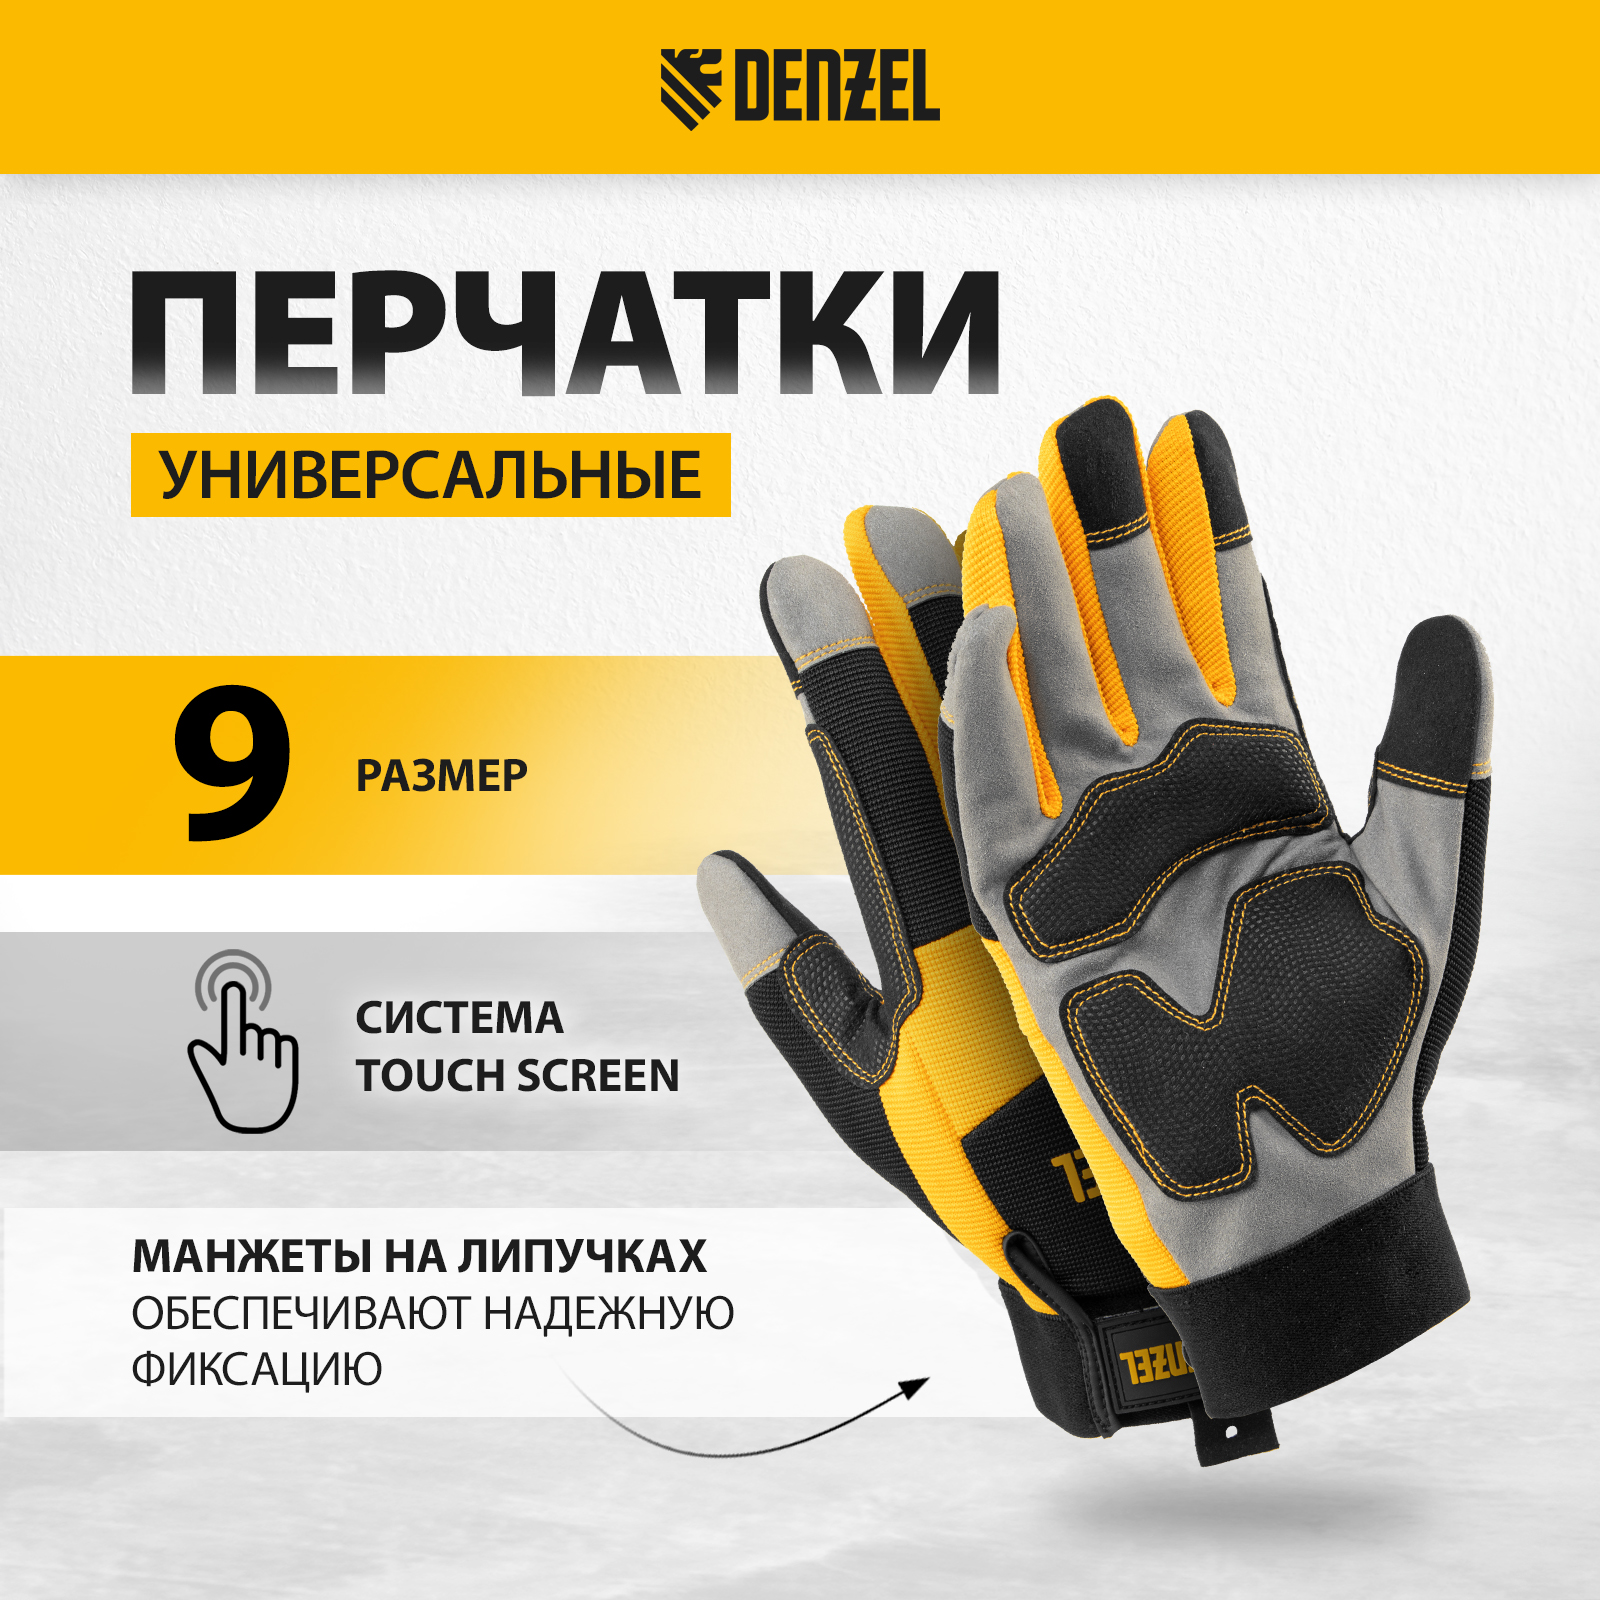 Перчатки универсальные DENZEL усиленные размер 9 67990 усиленные рабочие перчатки truper